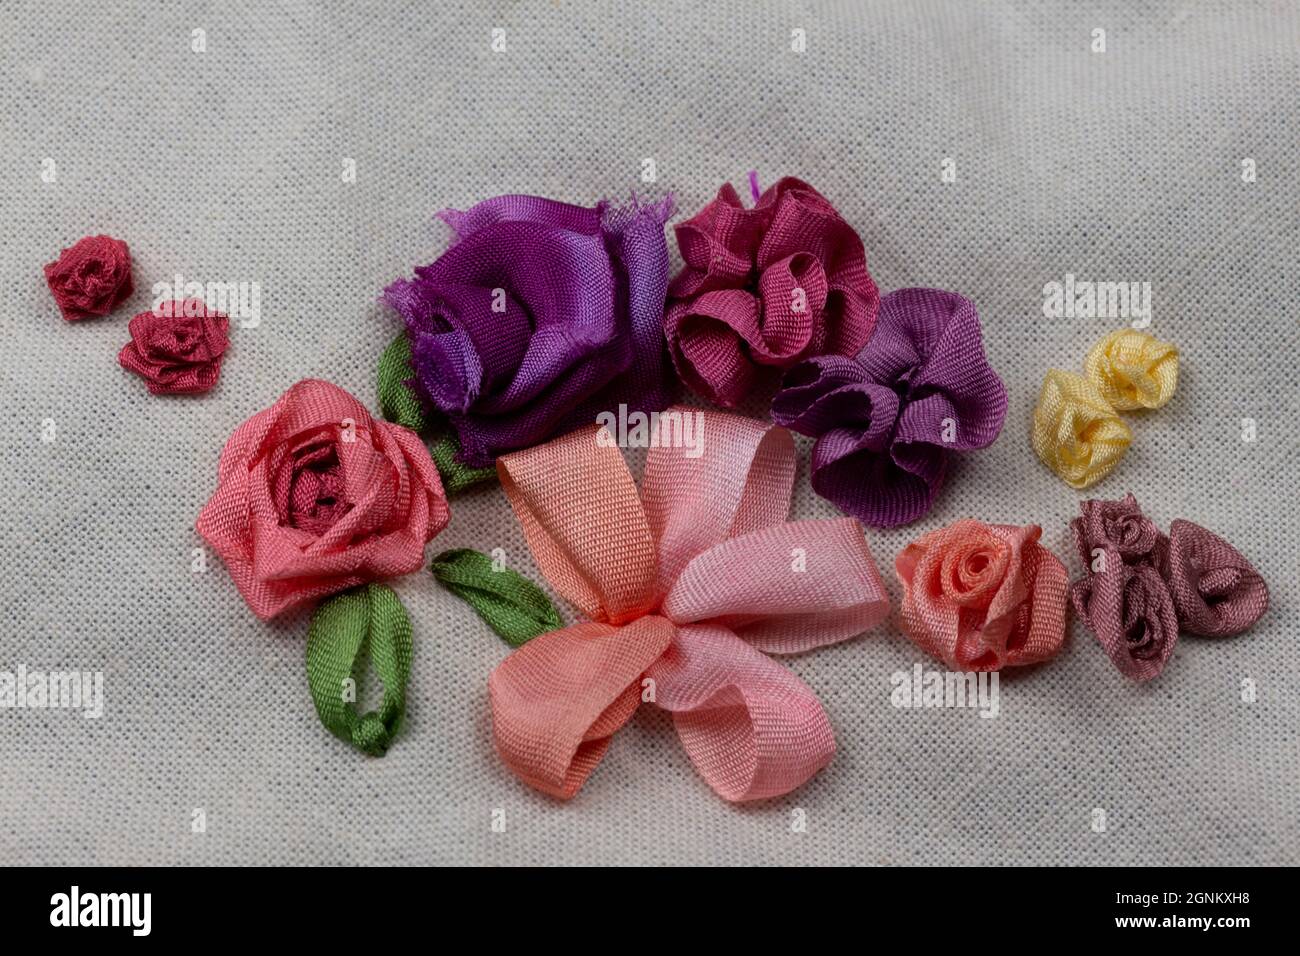 Stickerei Sampler Leinwand mit Beispielen von Seidenband Blumen in rosa, rot, lila und gelb Farben Stockfoto